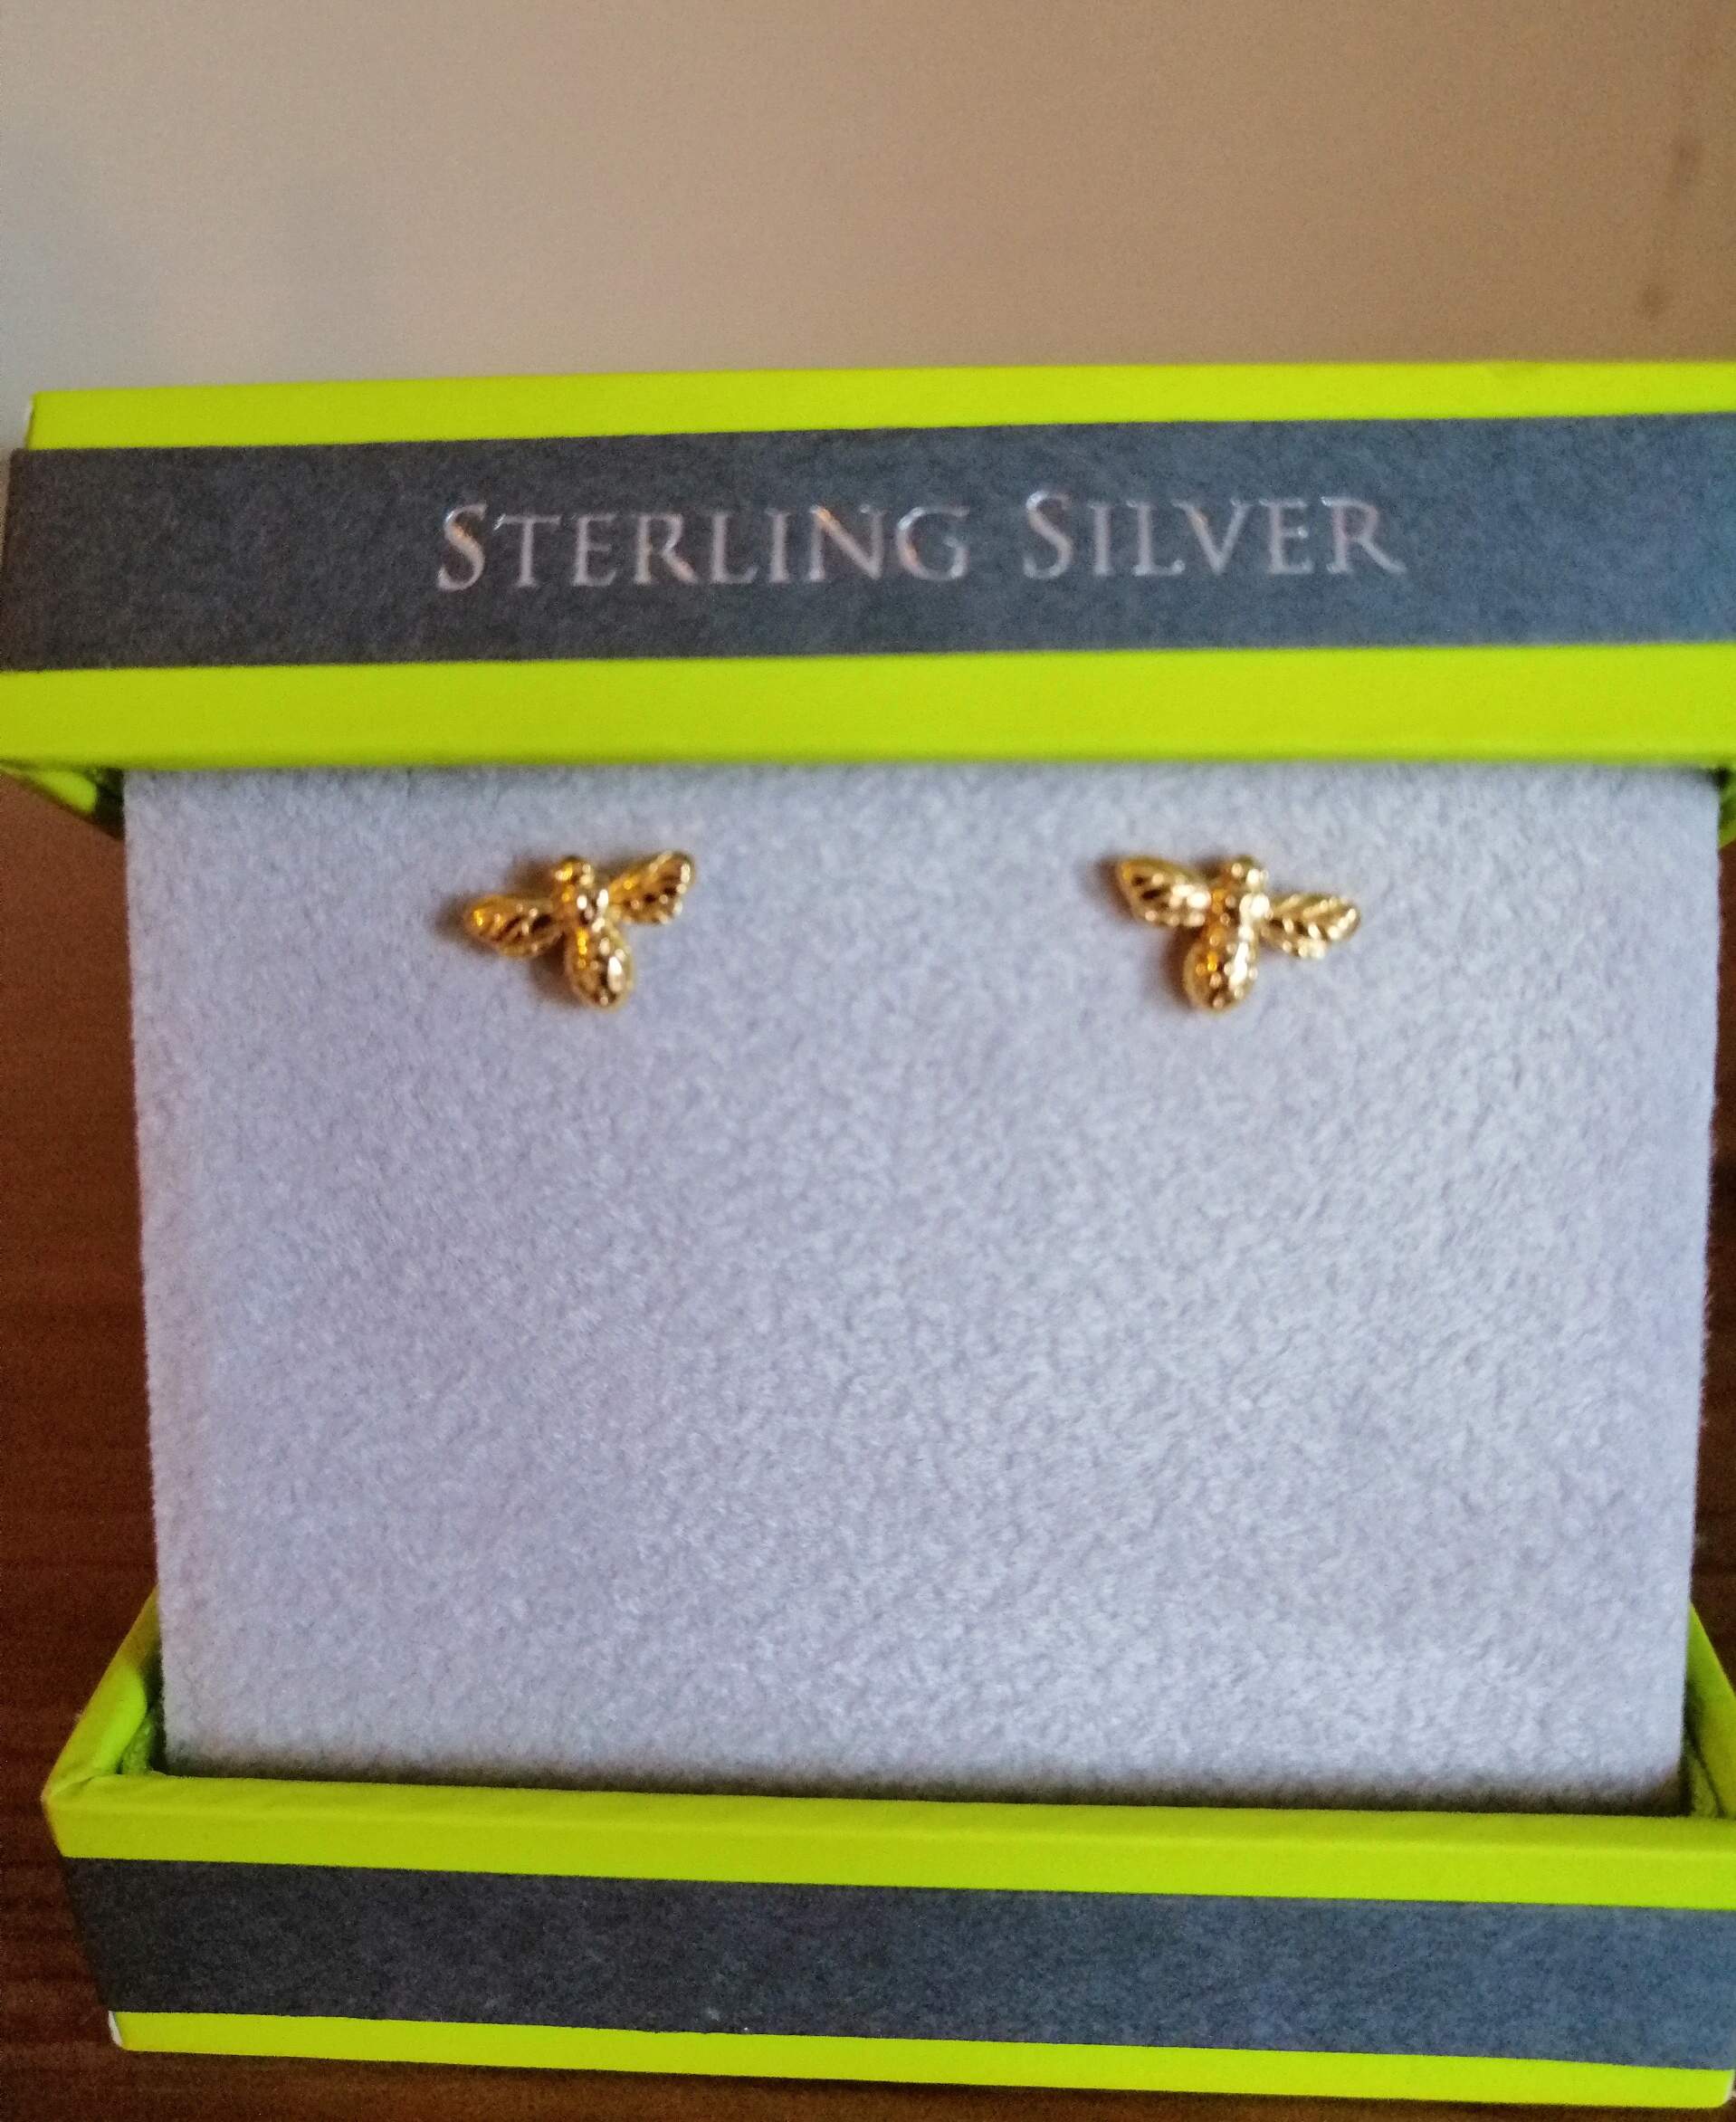 Sterling Silver Jewellery by Reeves & Reeves